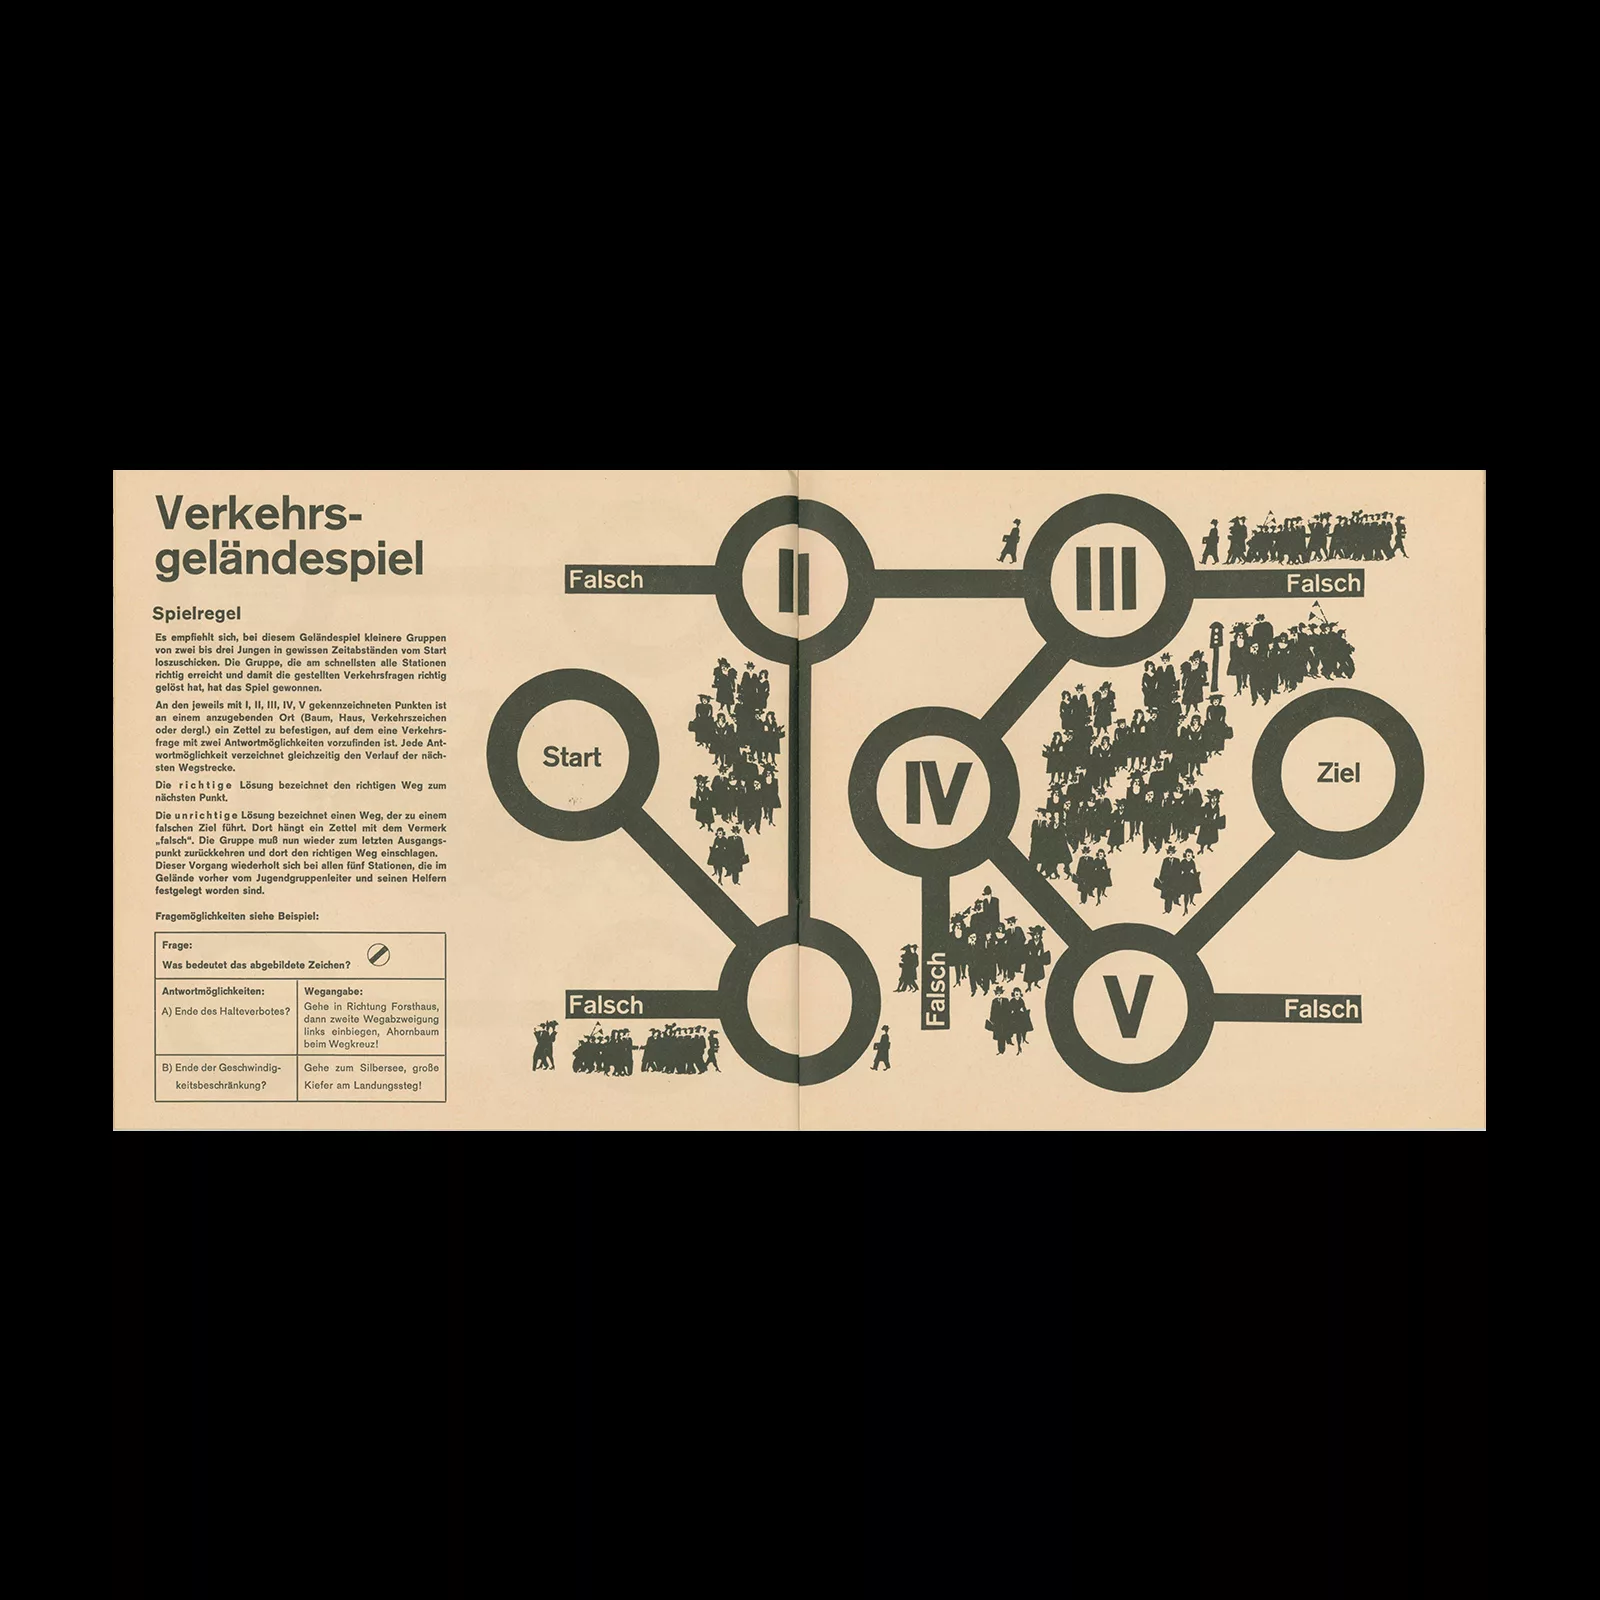 Arbeitsmappe 1, Evangelische Arbeitsgemeinschaft für Verkehrsfragen, Nicol-Verlag Kassel, 1975. Designed by Rambow + Lienemeyer